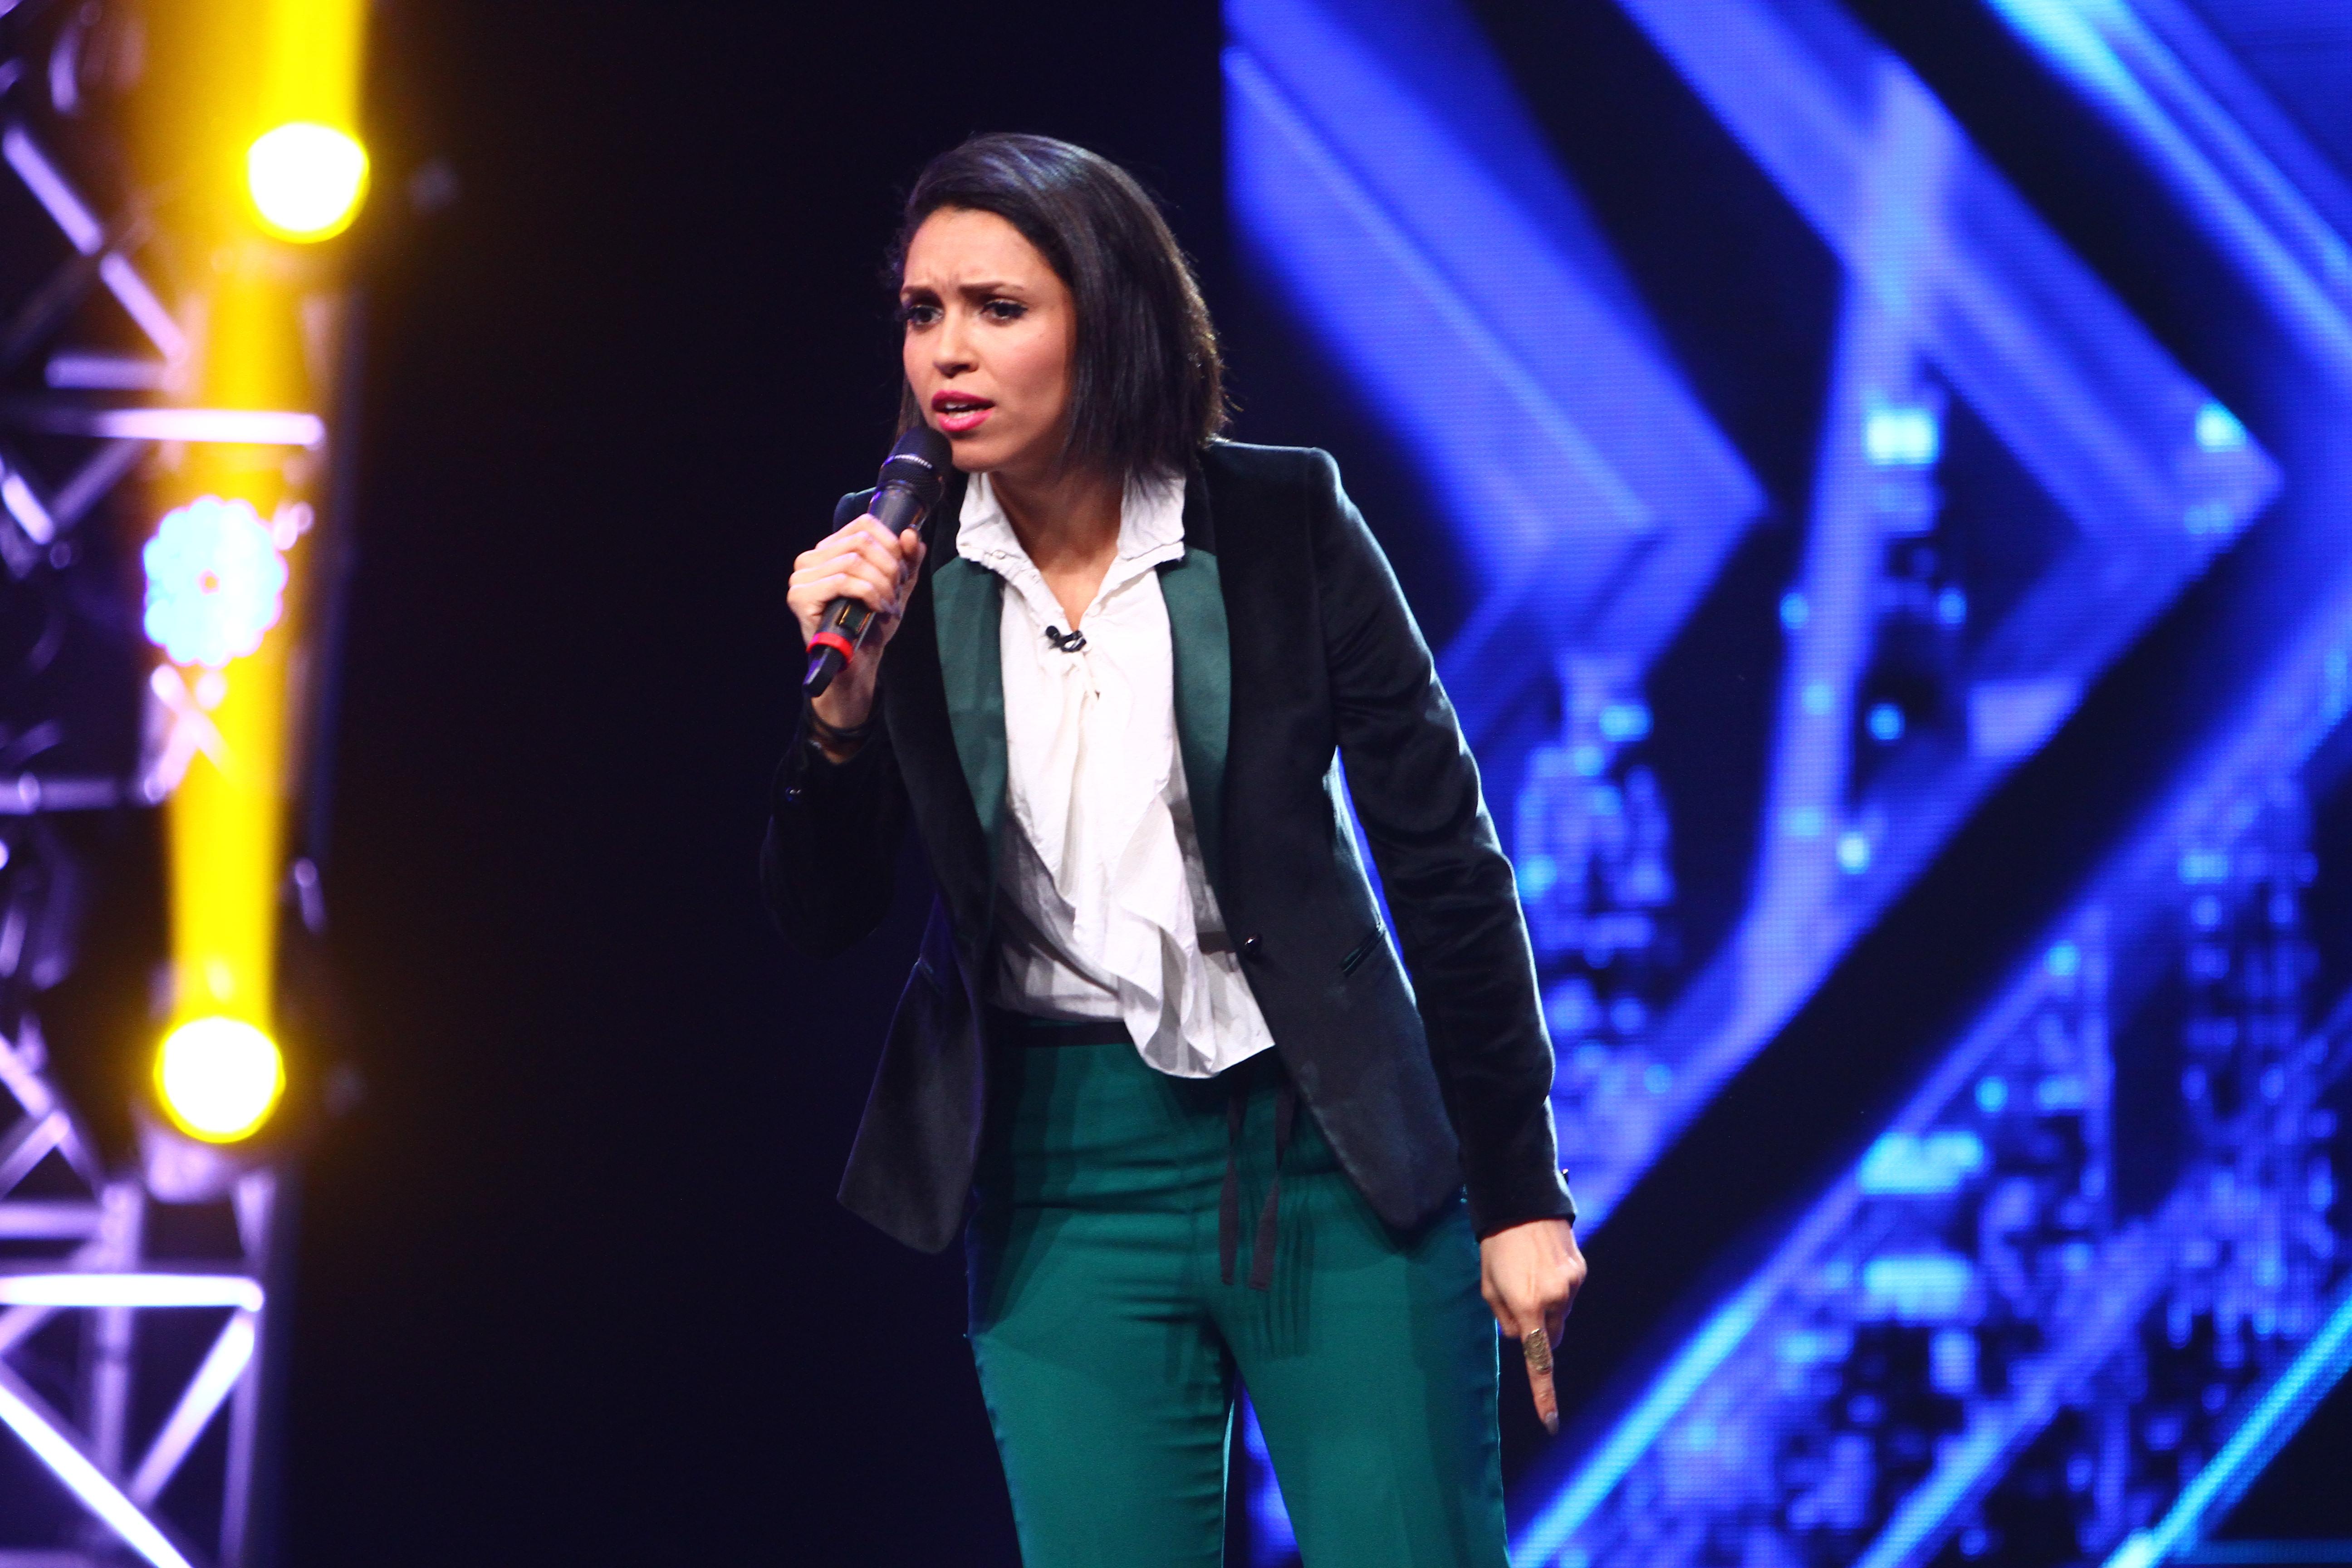 Vineri seară, în etapa de Bootcamp din show-ul de la Antena 1, Delia și-a ales concurenții cu care merge la Duelurile X Factor